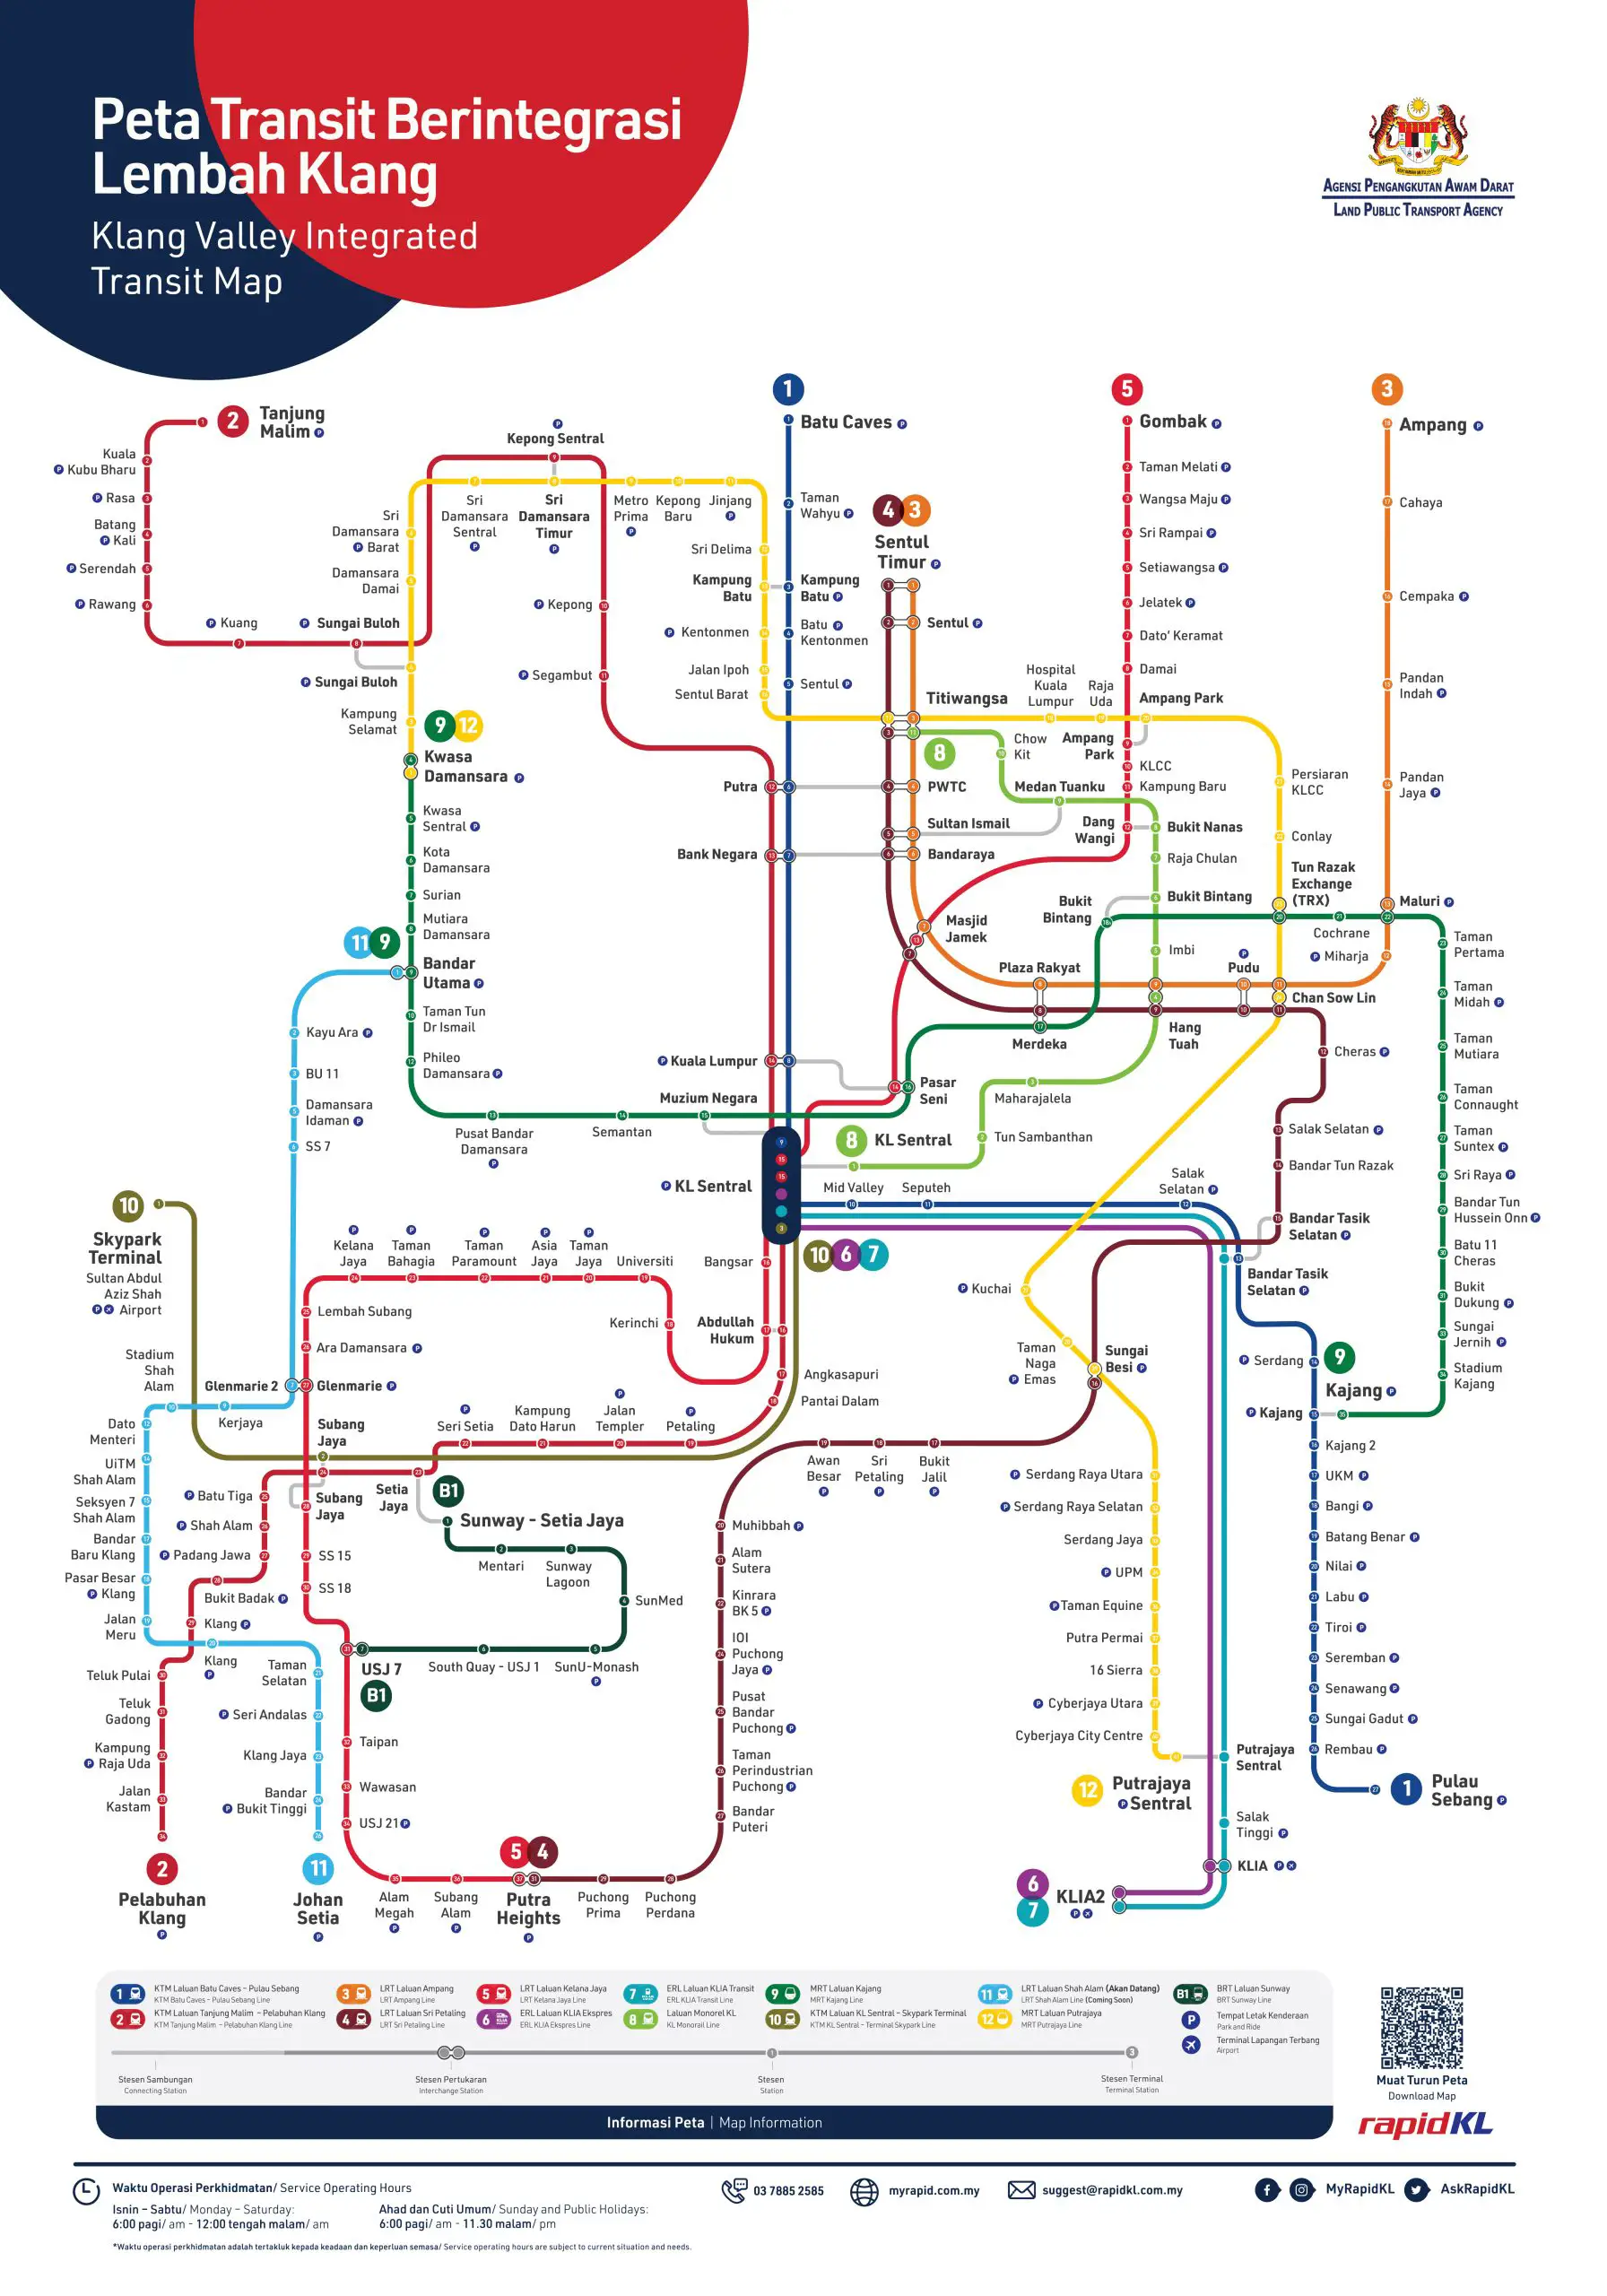 Peta Transit Bersepadu Lembah Klang Untuk Laluan Monorel LRT MRT Laluan BRT Sunway.